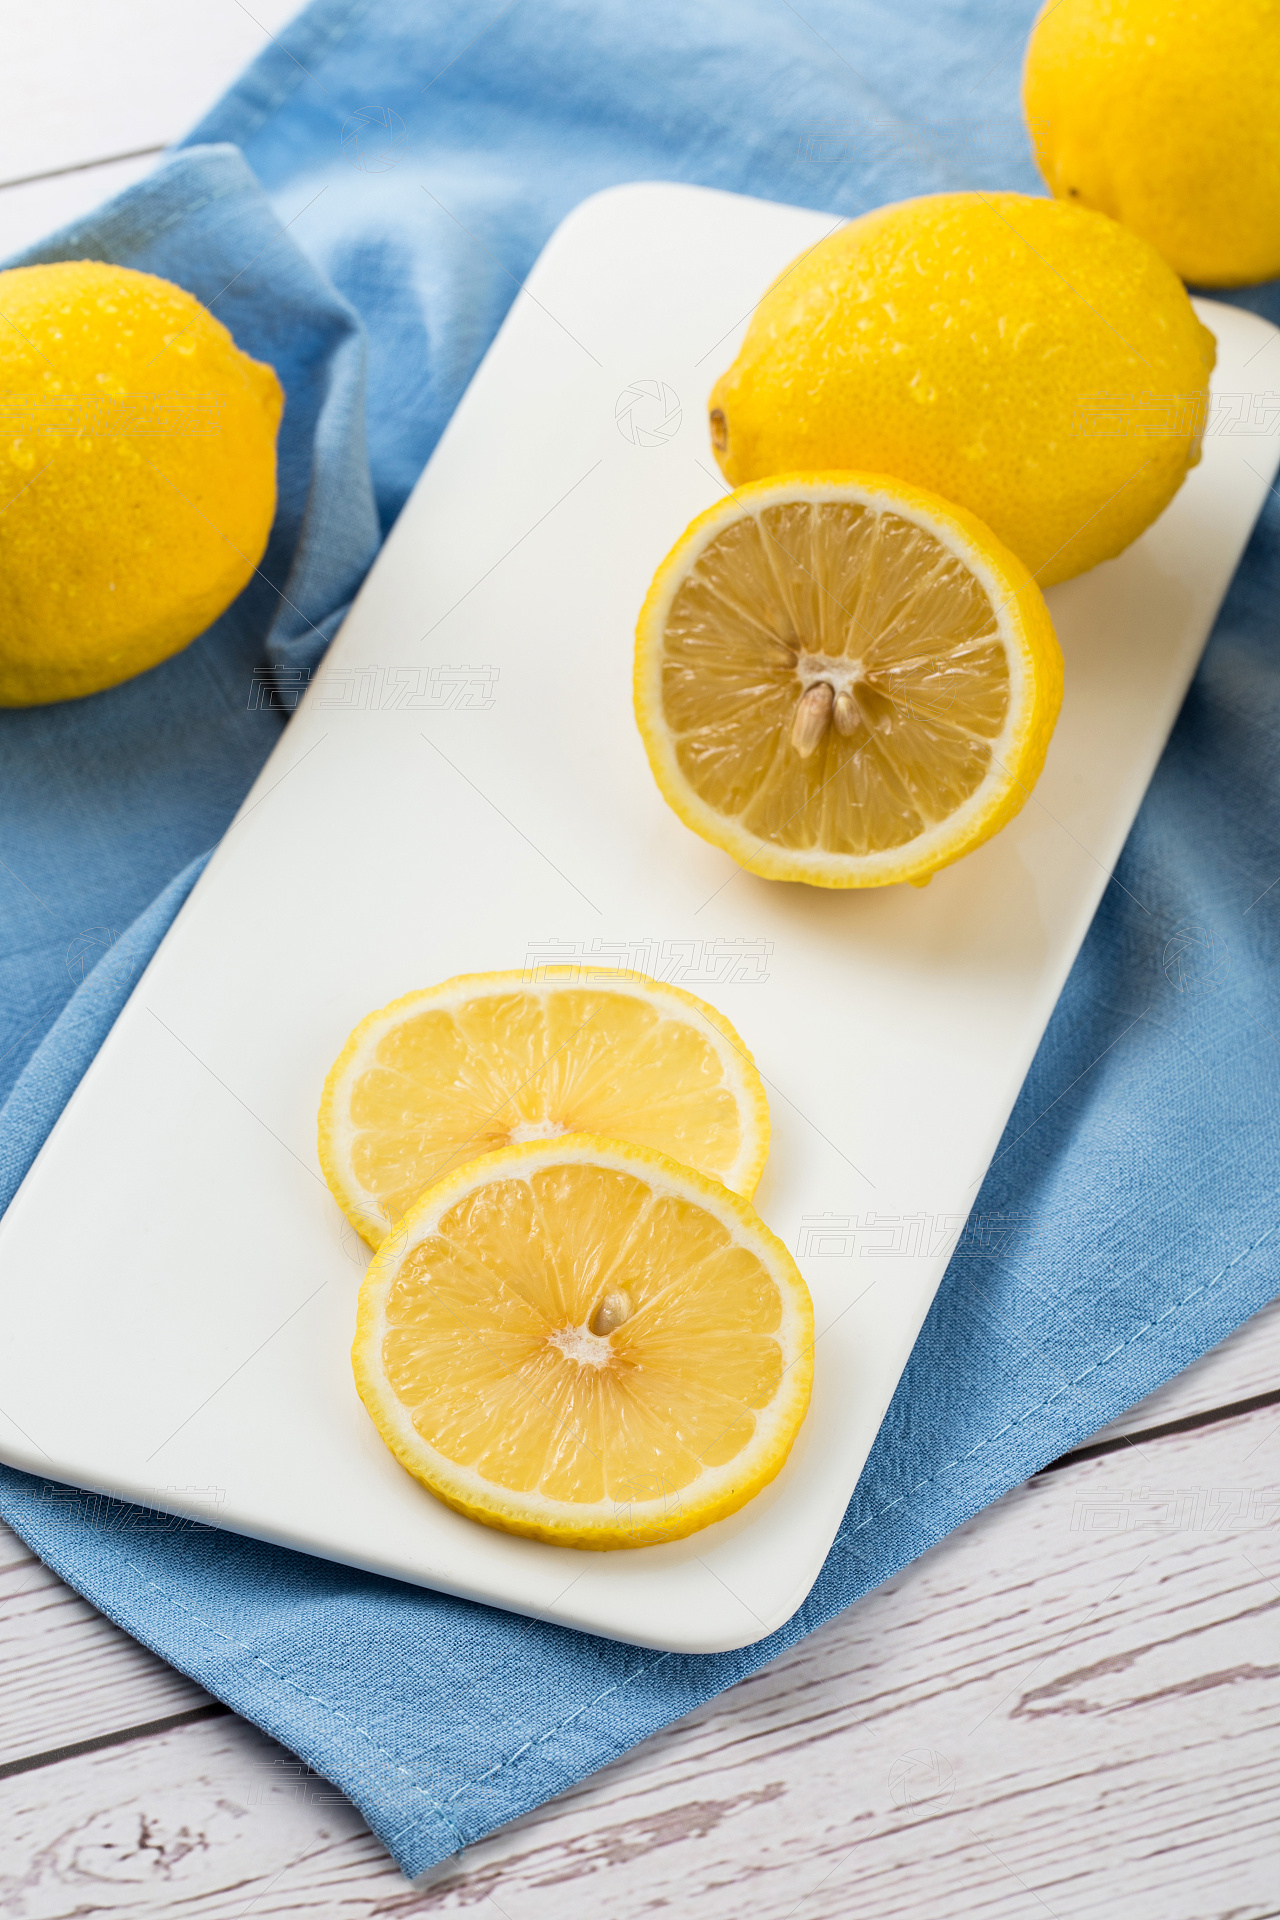 清新酸甜可口的柠檬水果图片桌面壁纸-美食壁纸-壁纸下载-美桌网